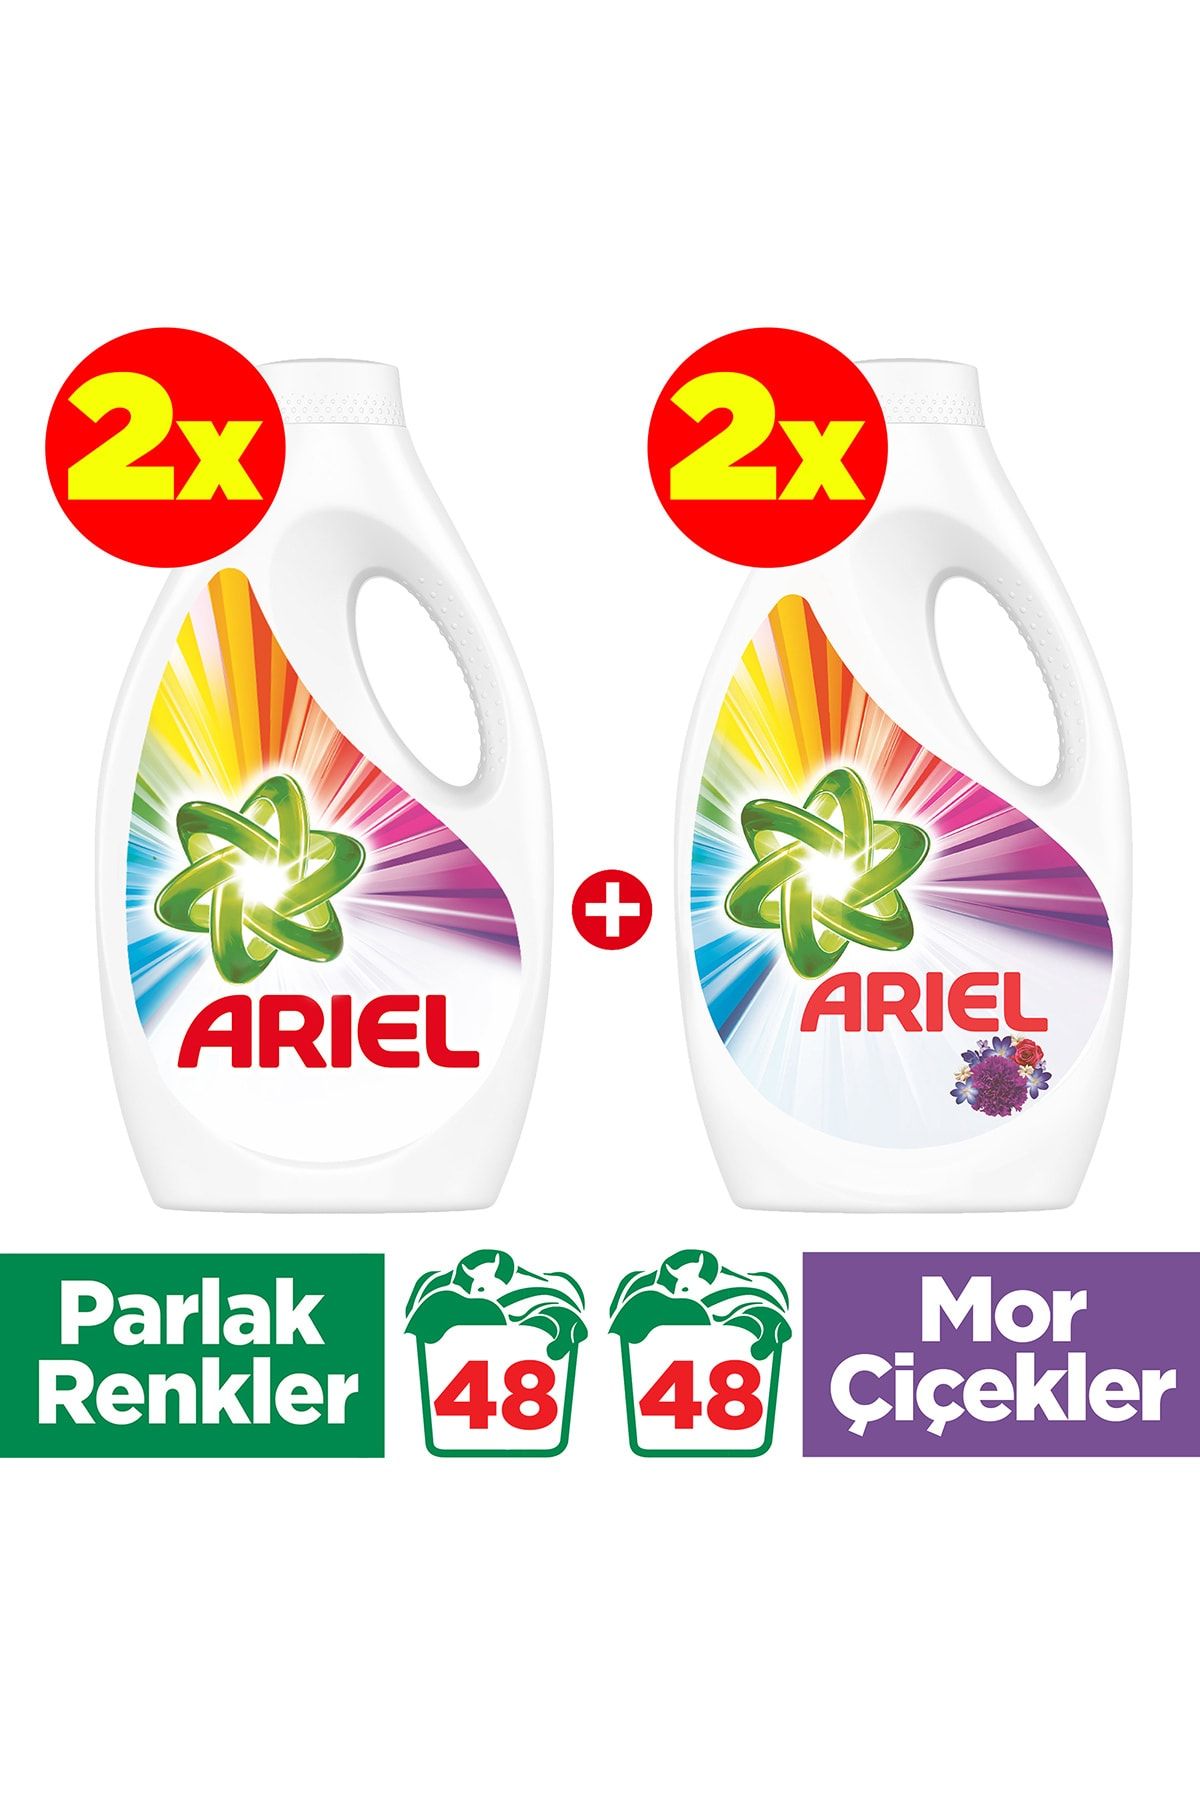 Ariel Sıvı Çamaşır Deterjanı 2 x Parlak Renkler 24 Yıkama + 2 x Mor Çiçekler 24 Yıkama 4'lü Paket